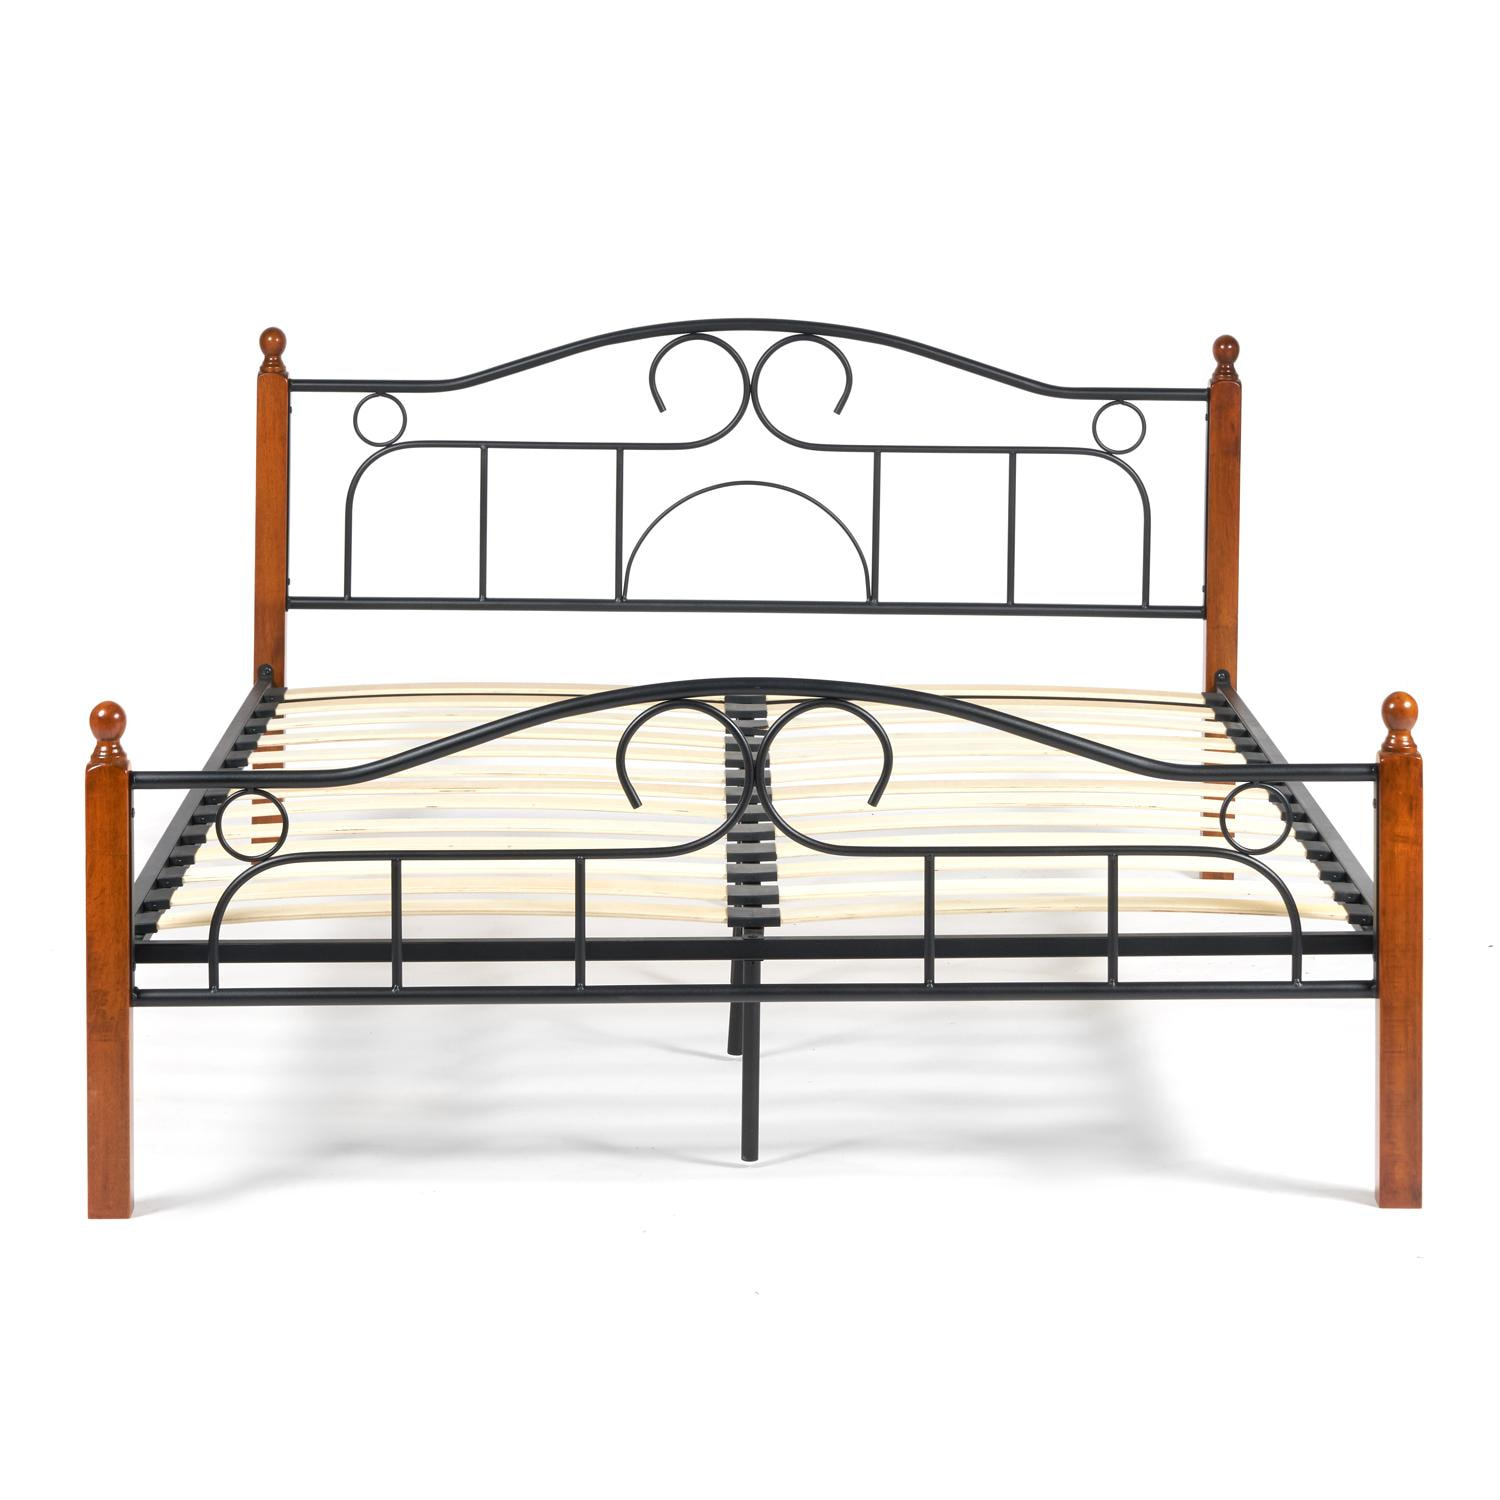 Кровать AT-808 Wood slat base дерево гевея/металл, 180*200 см (King bed), красный дуб/черный